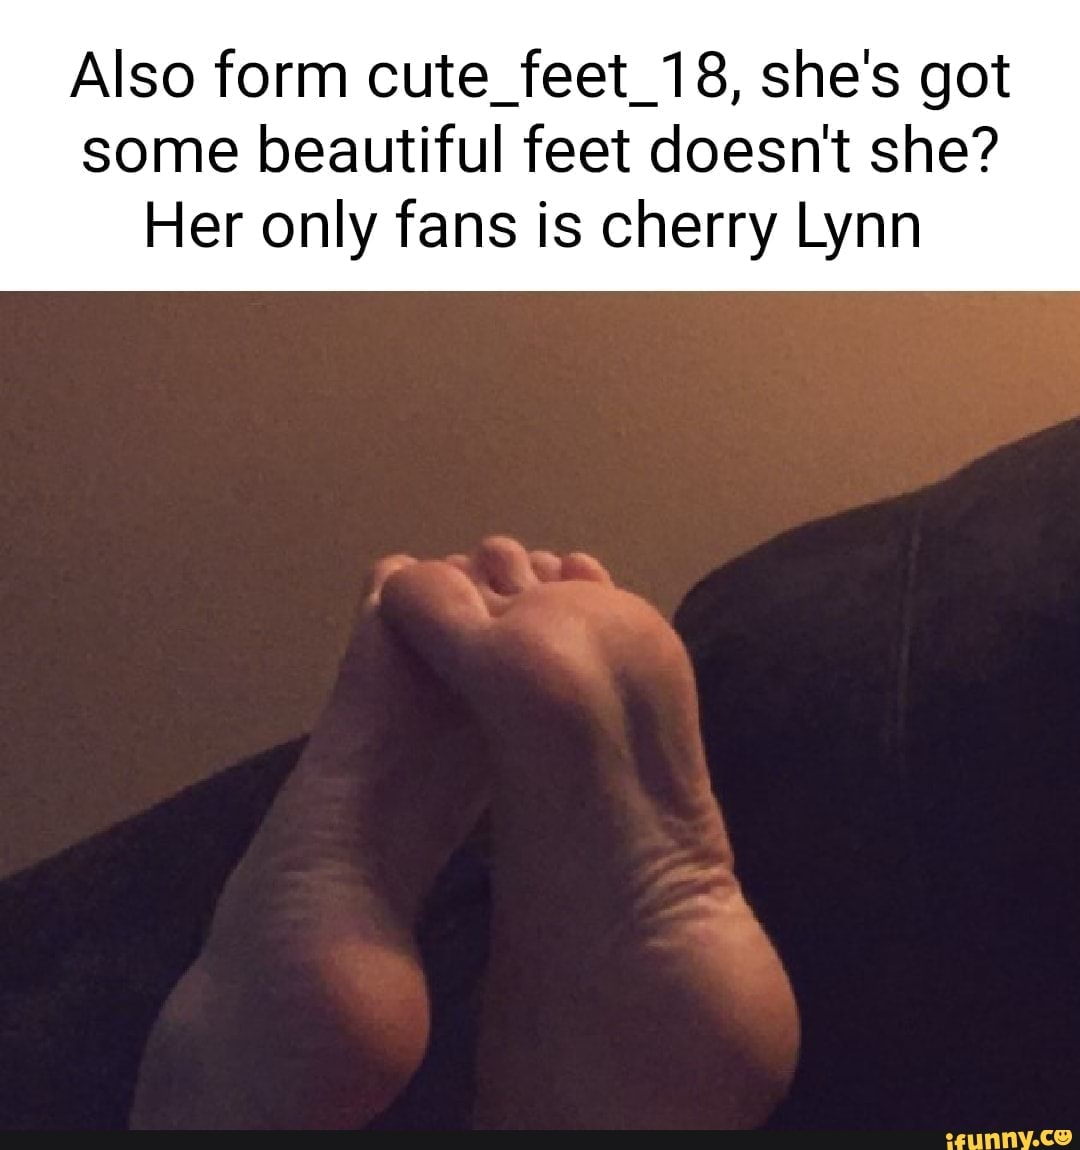 Feet fans only